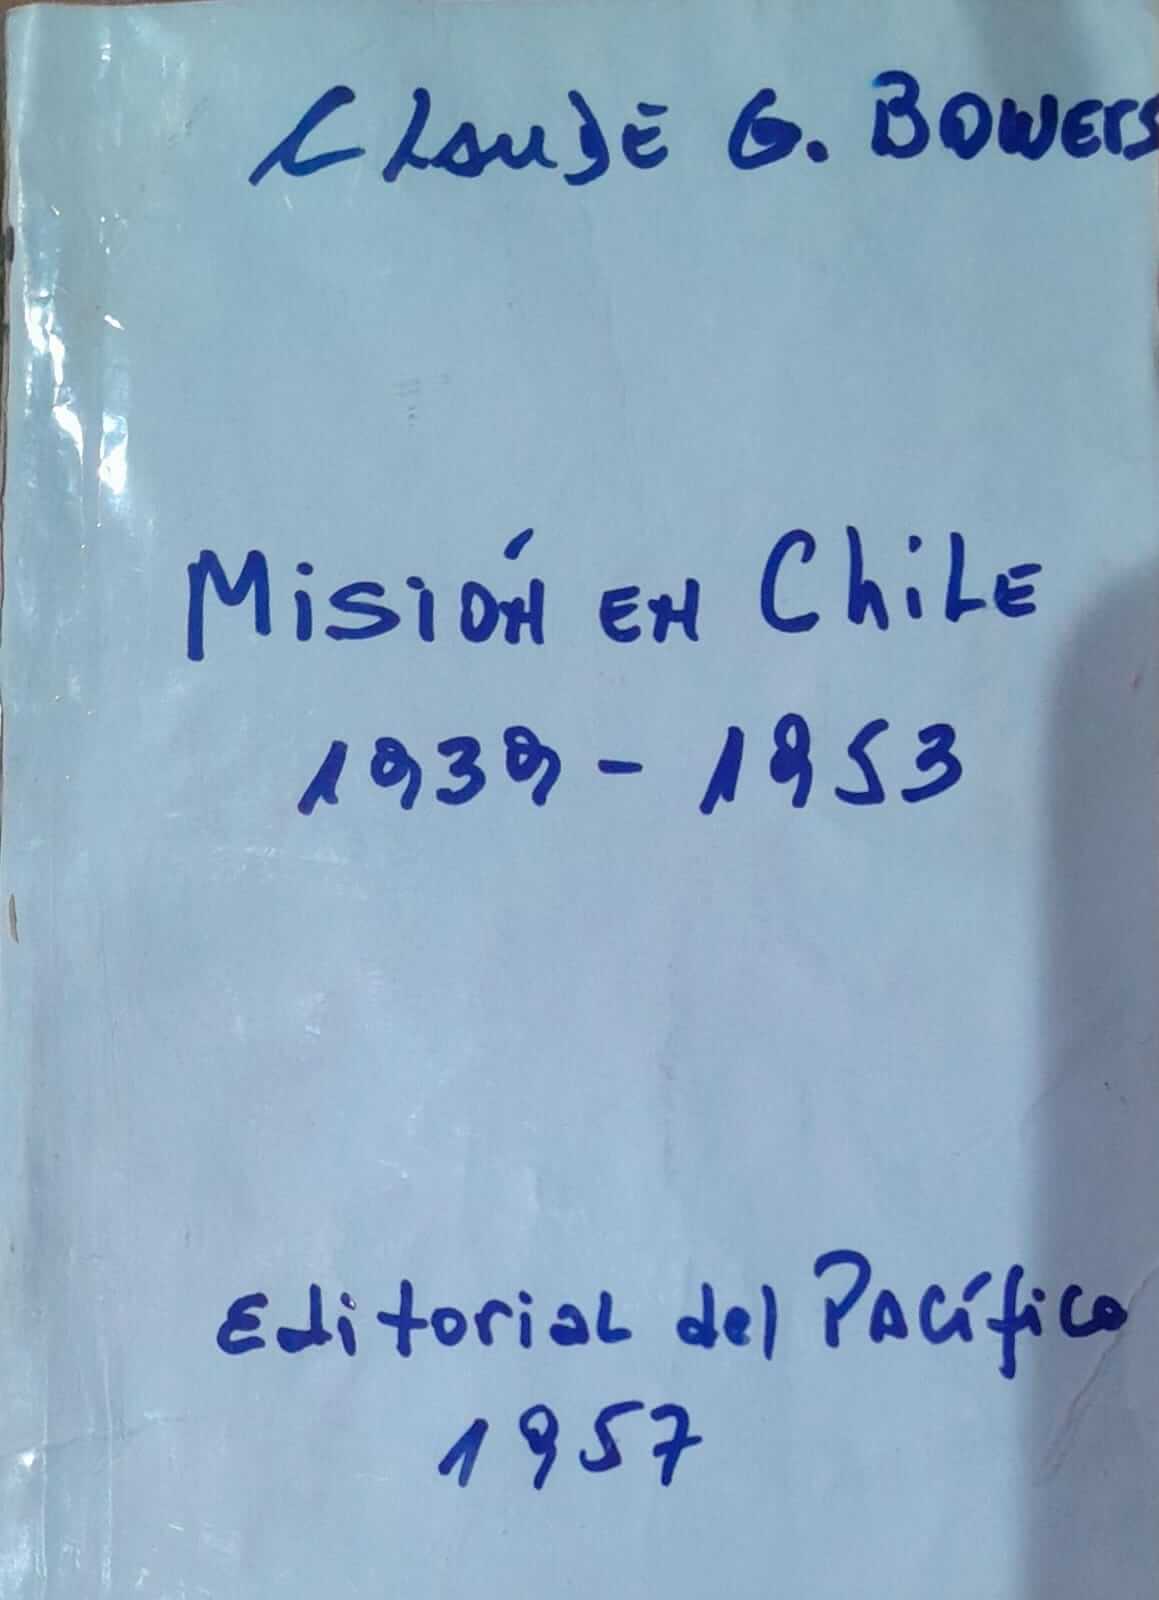 Misión En Chile. 1939-1953.